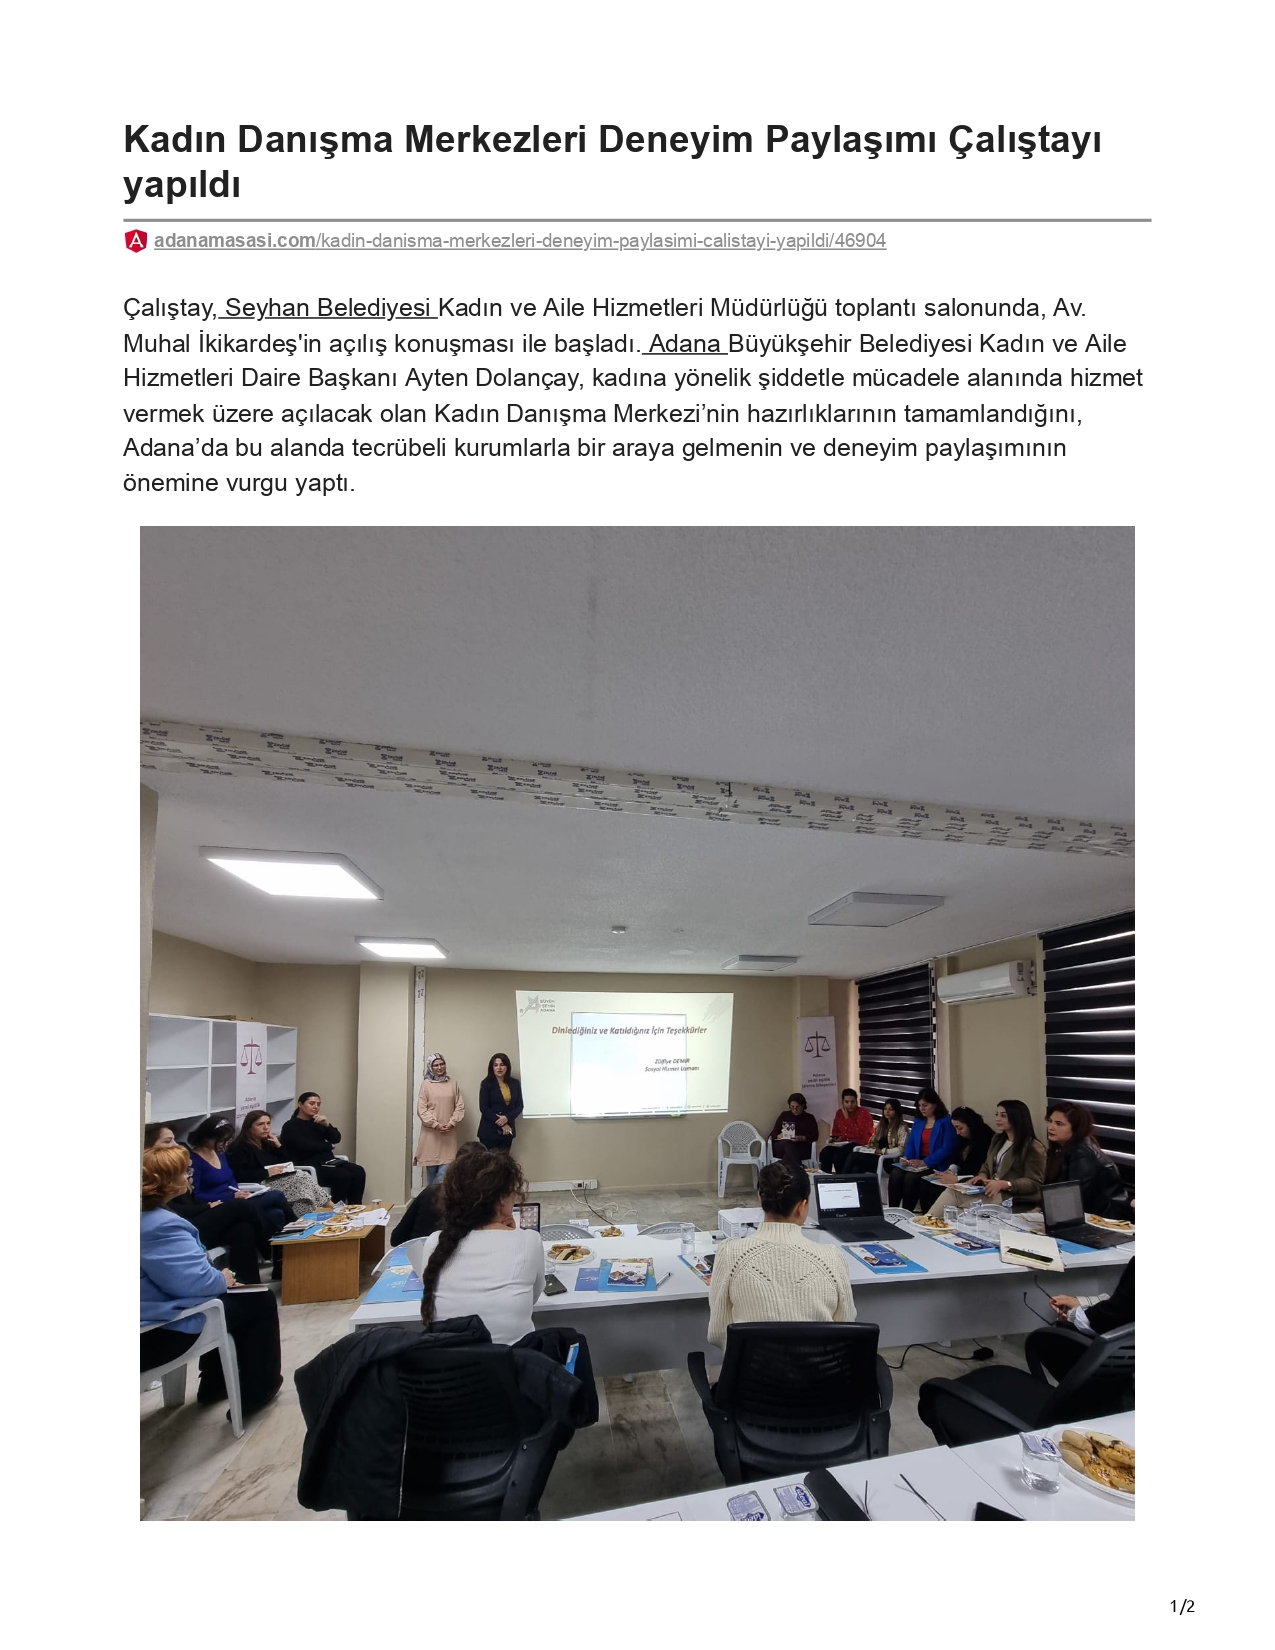 Adana Masası: Kadın Danışma Merkezleri Deneyim Paylaşımı Çalıştayı Yapıldı